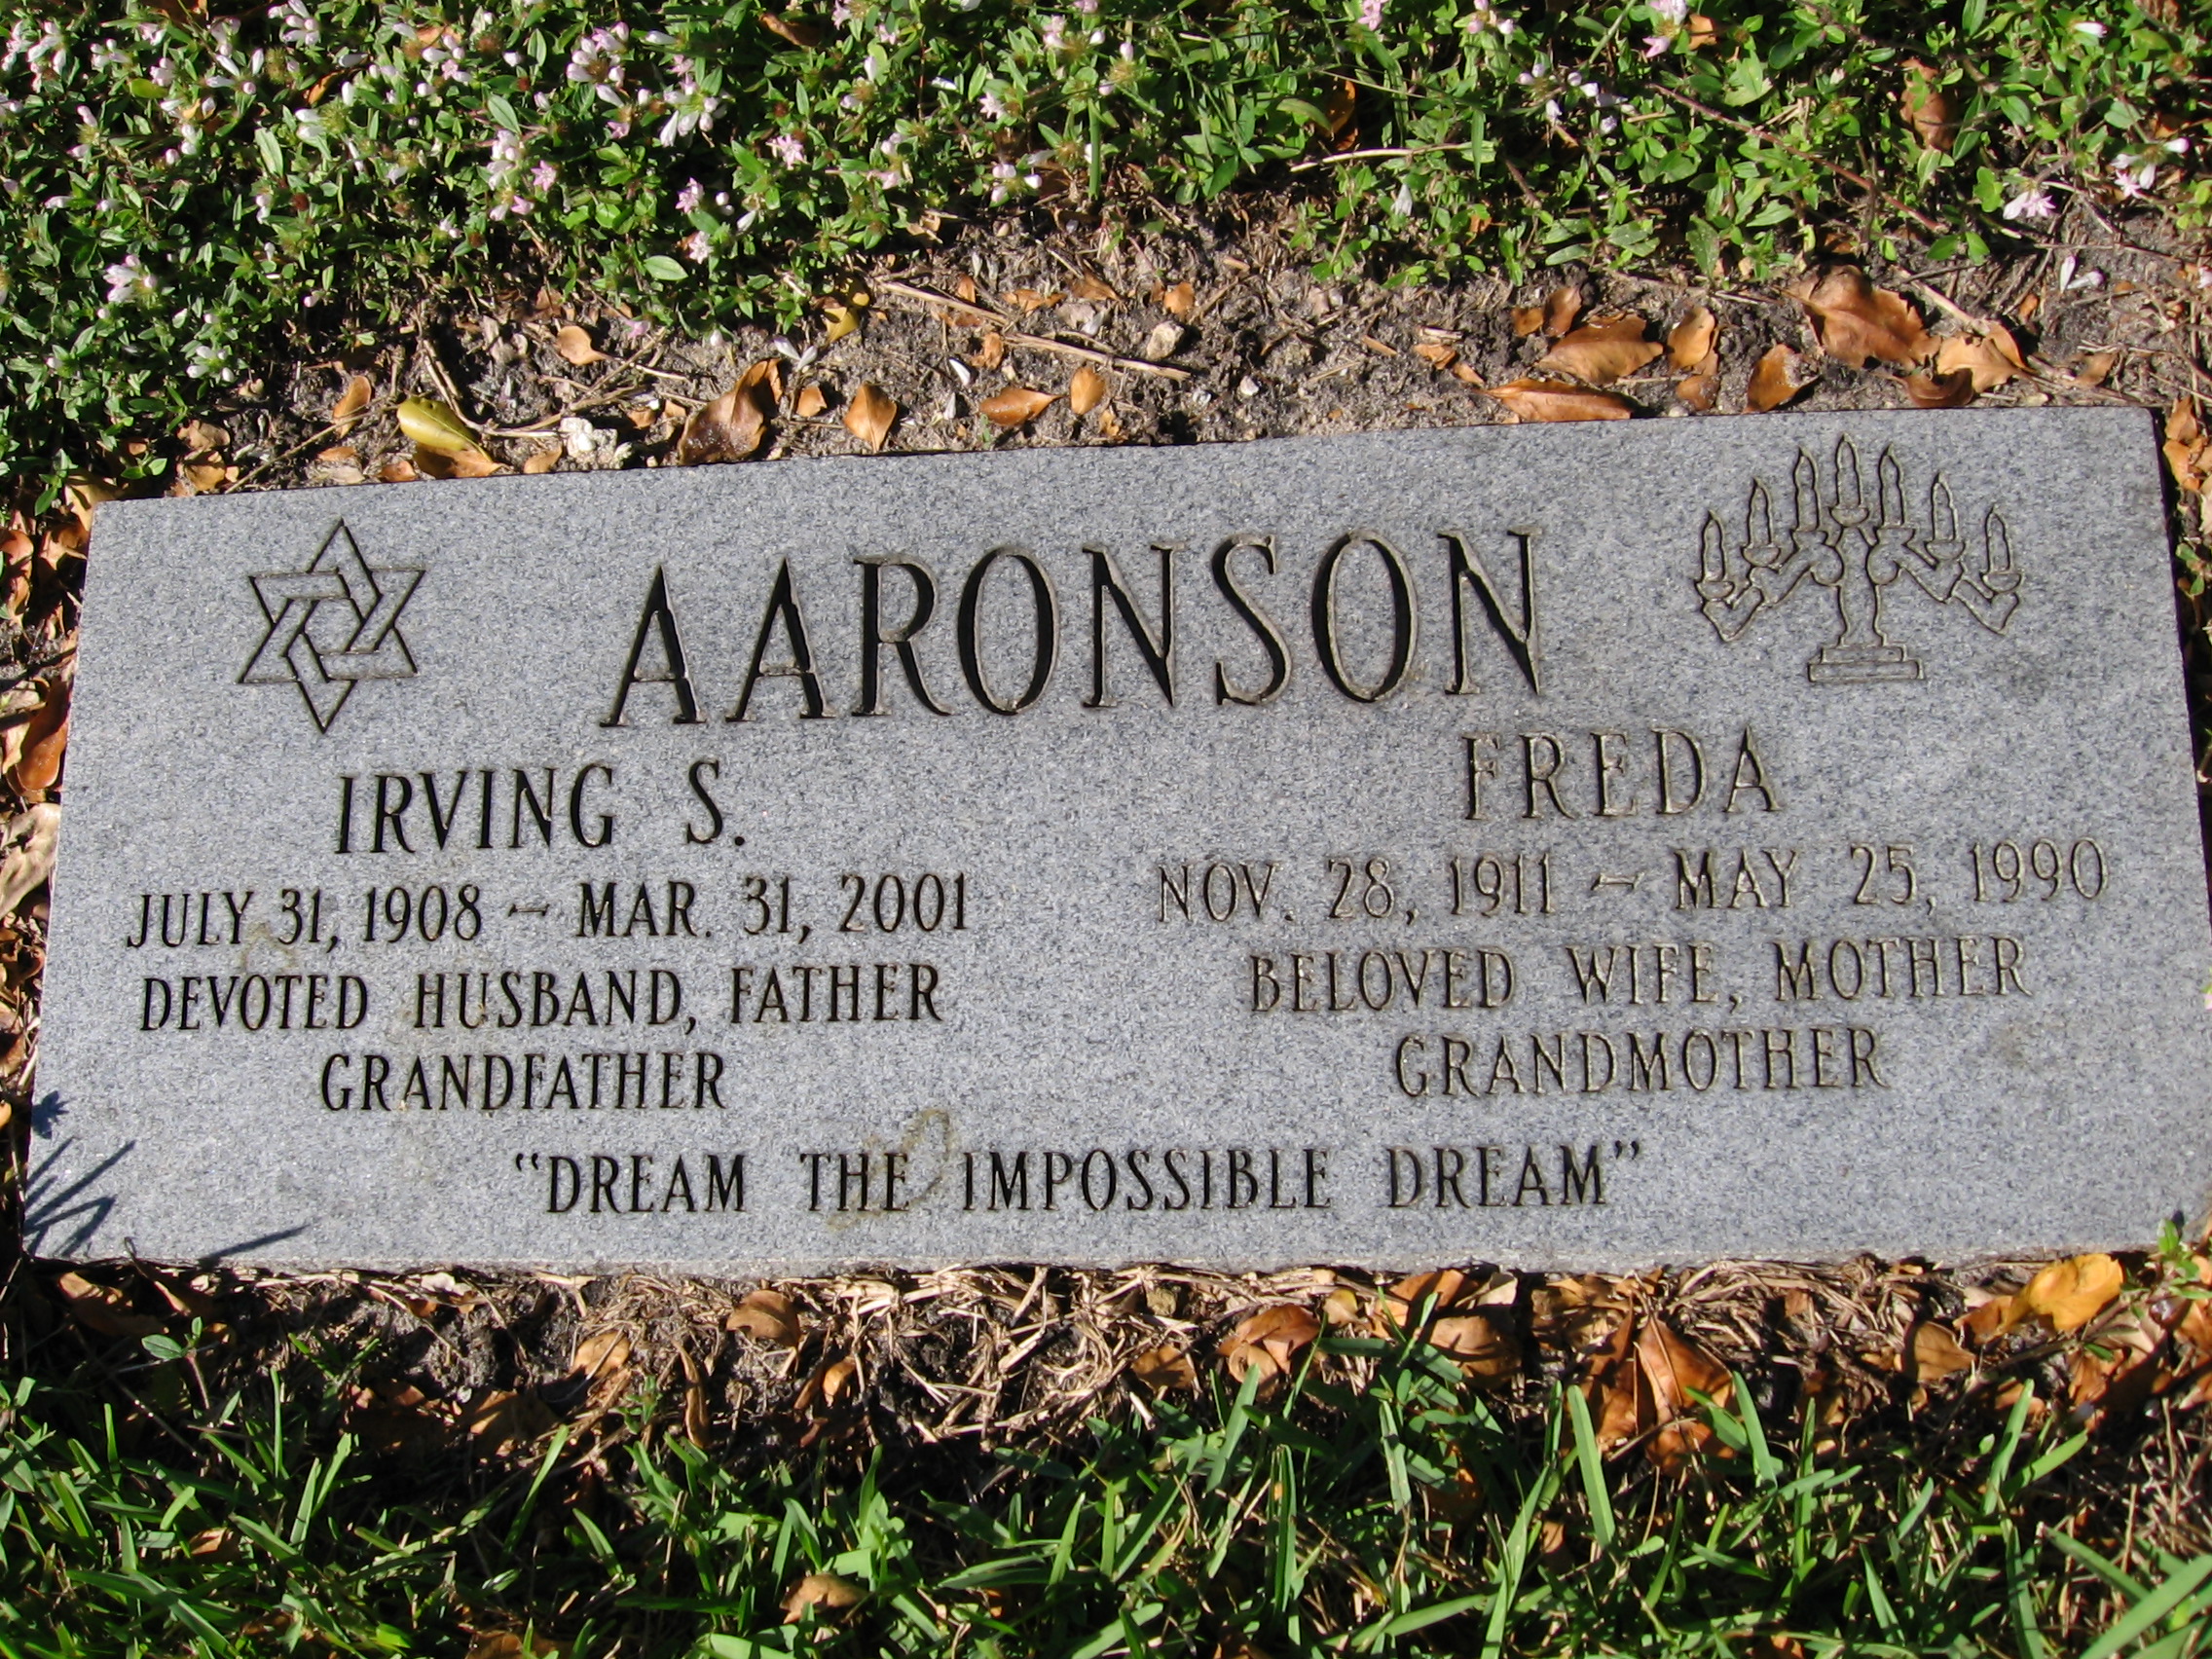 Irving S Aaronson